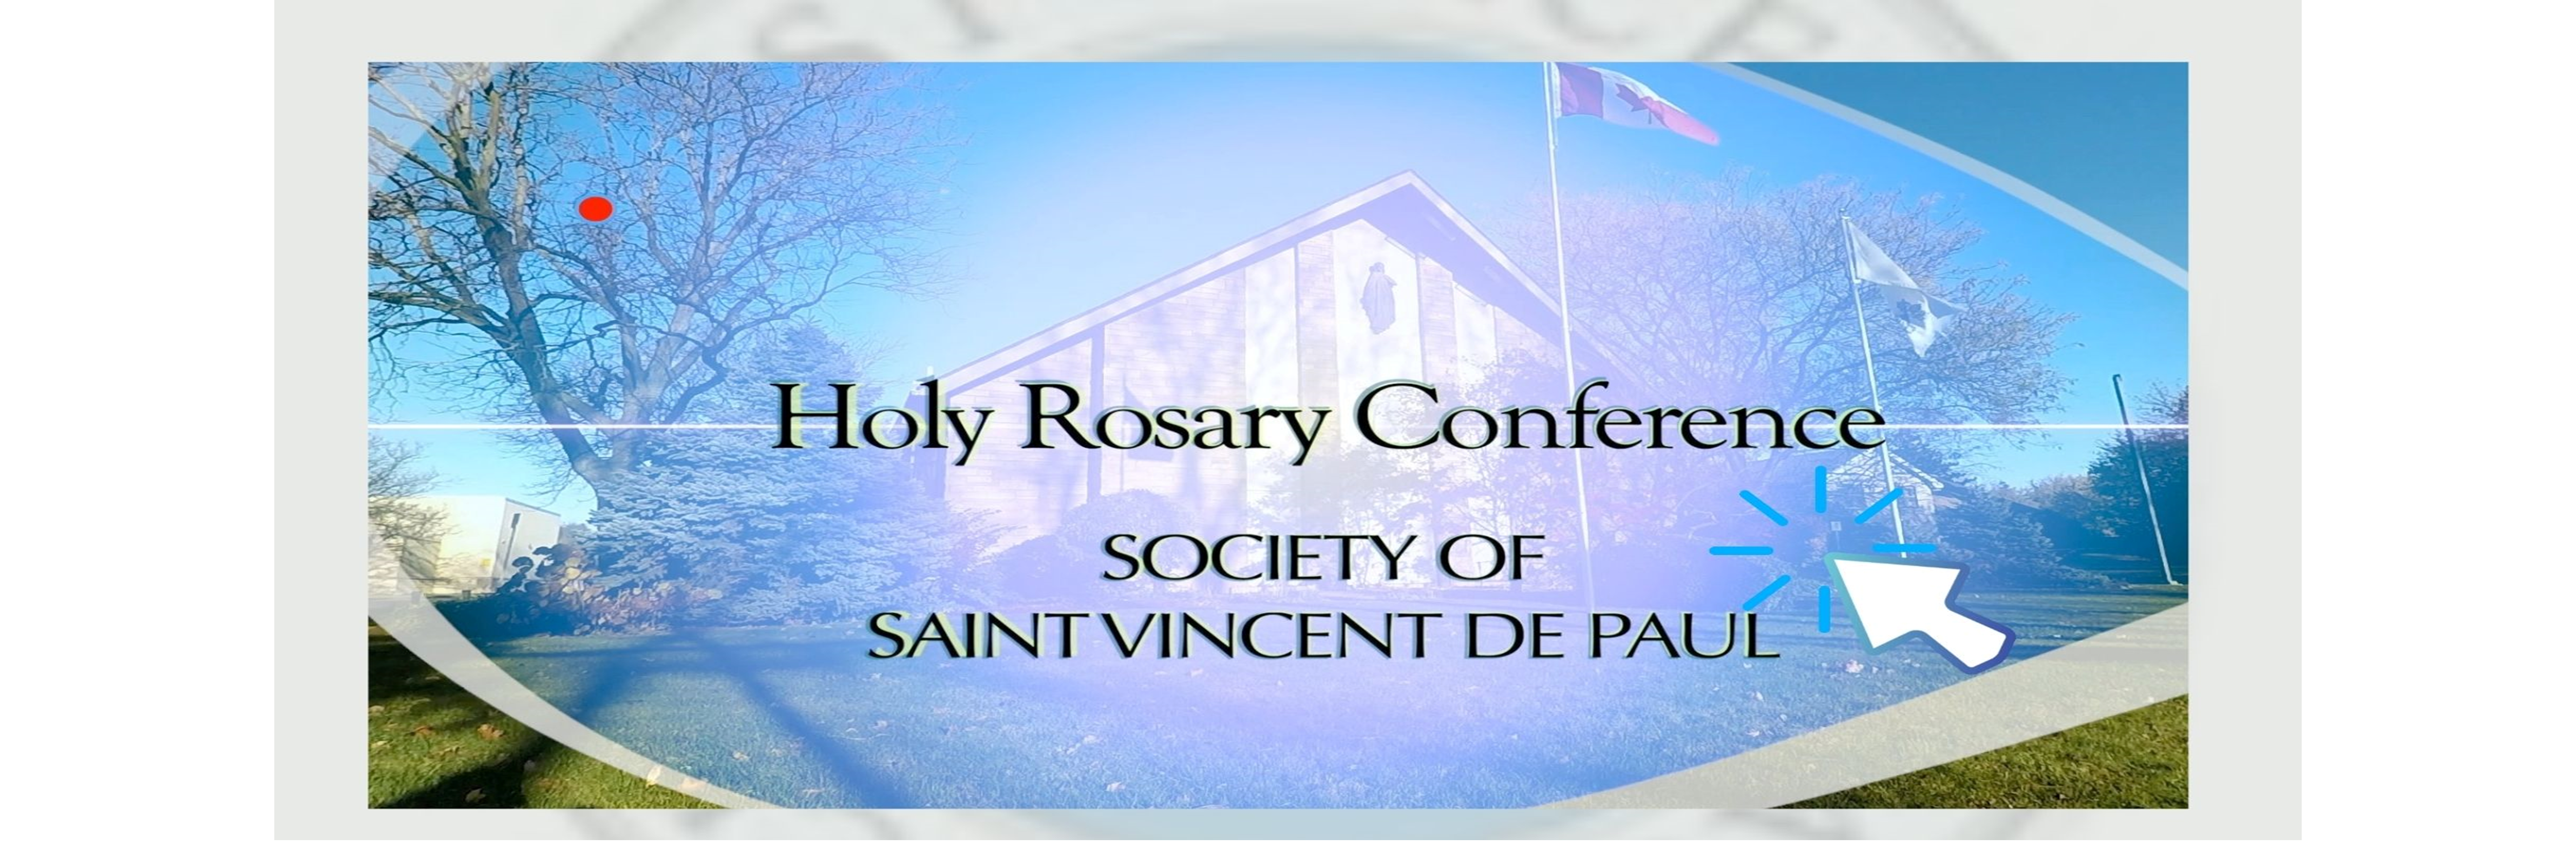 St. Vincent de Paul - New Video Presentation